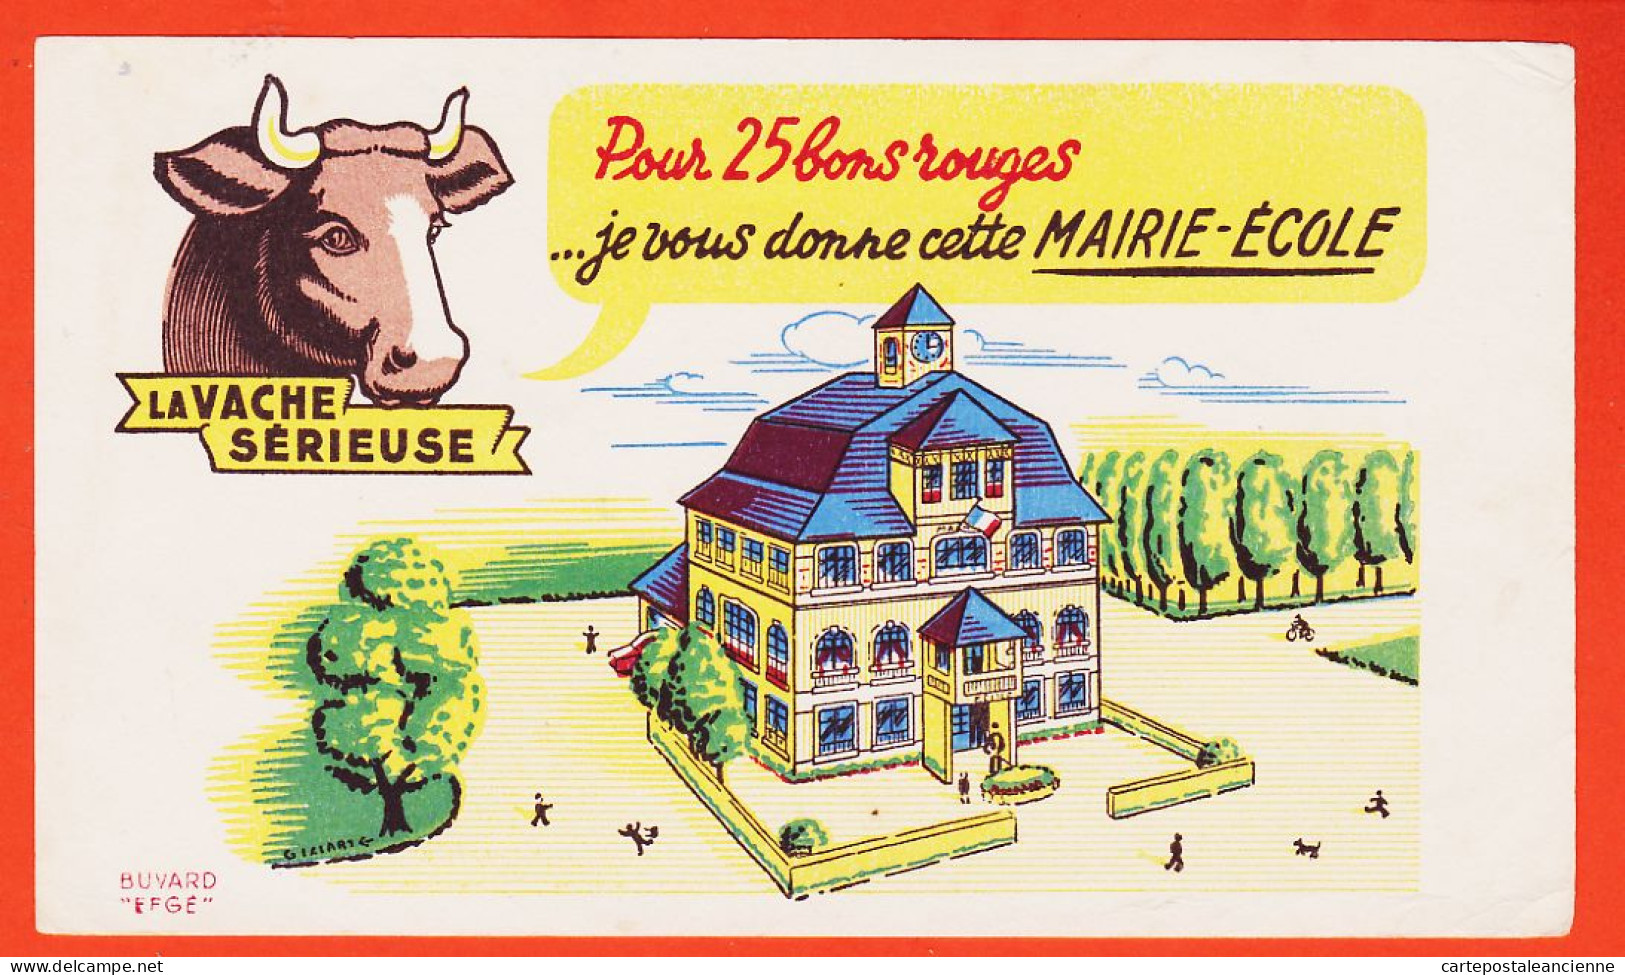 06170 / LA VACHE SERIEUSE Crème Double Crème De Gruyère Pour 30 Bons Cette Superbe Eglise / Buvard EFGE 1950s Cppub - Lebensmittel